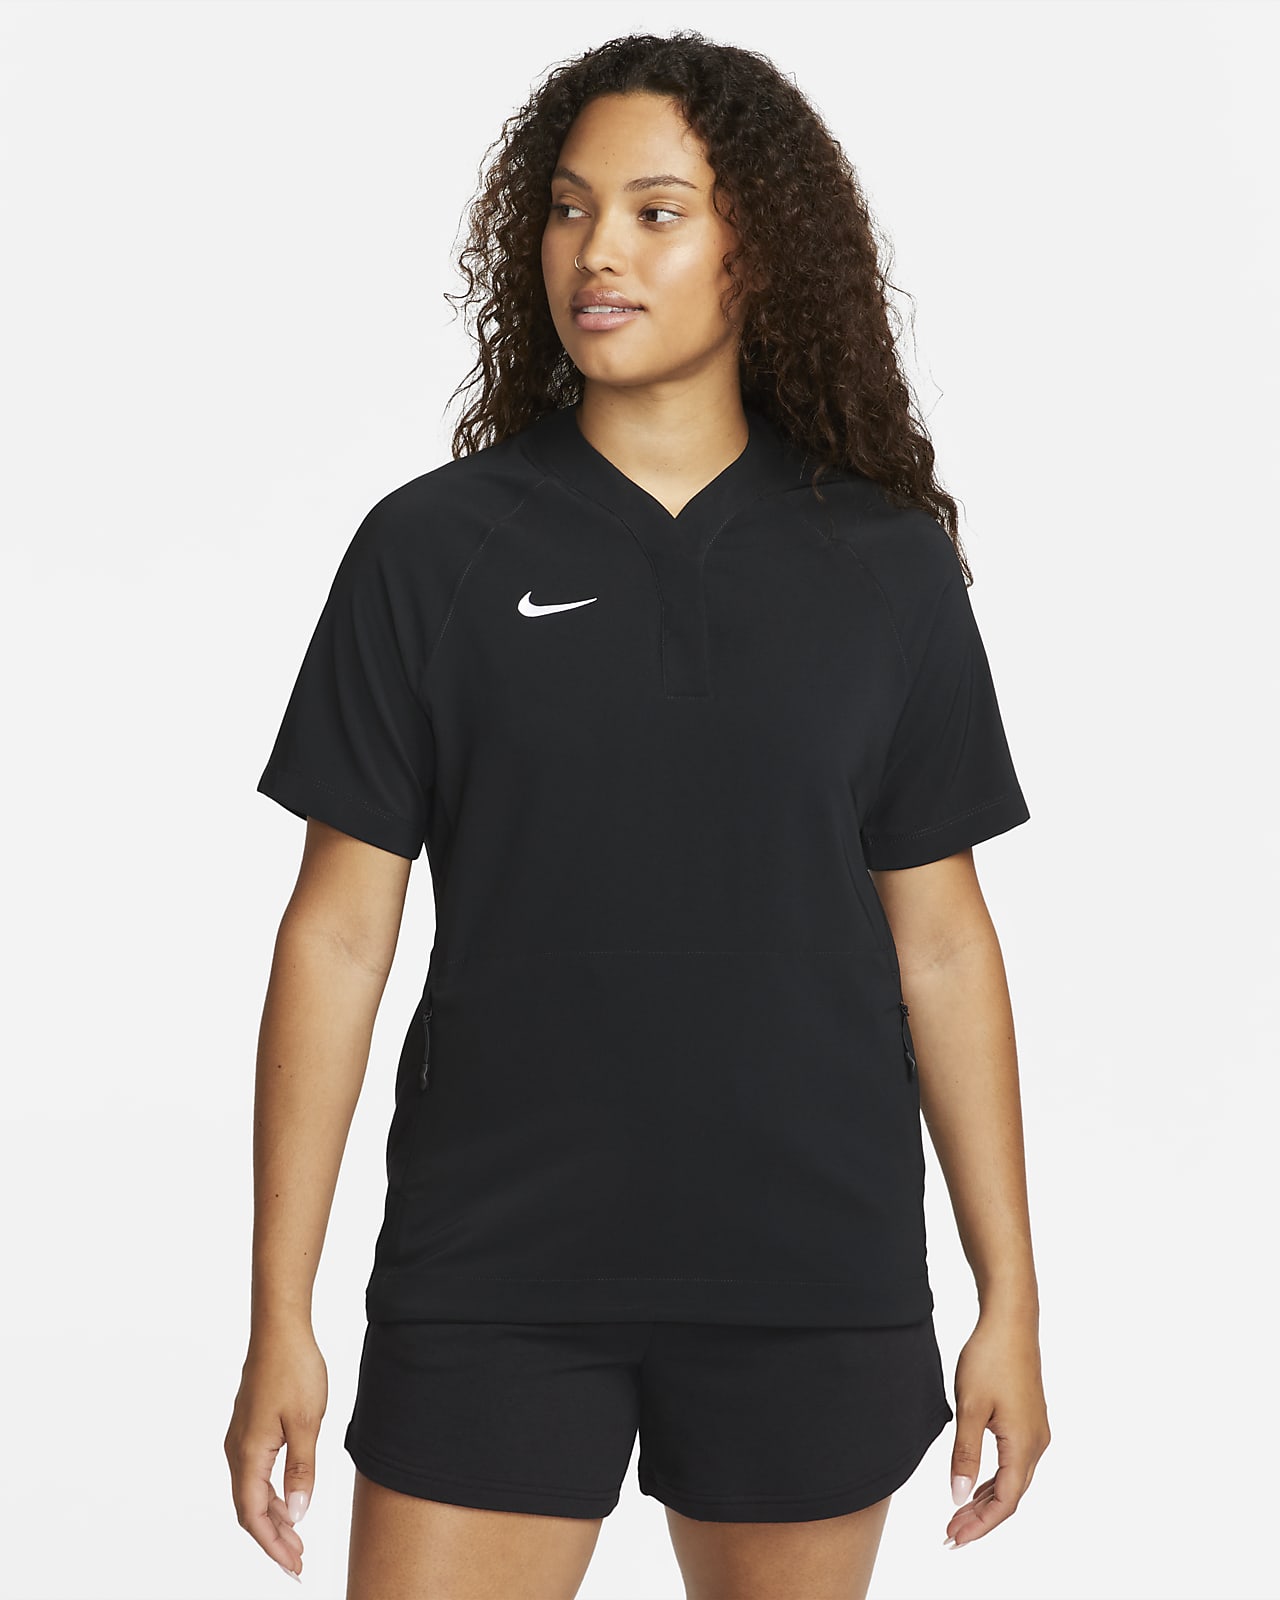 Short Sleeve, T-shirts, Sportswear, Women, Nike